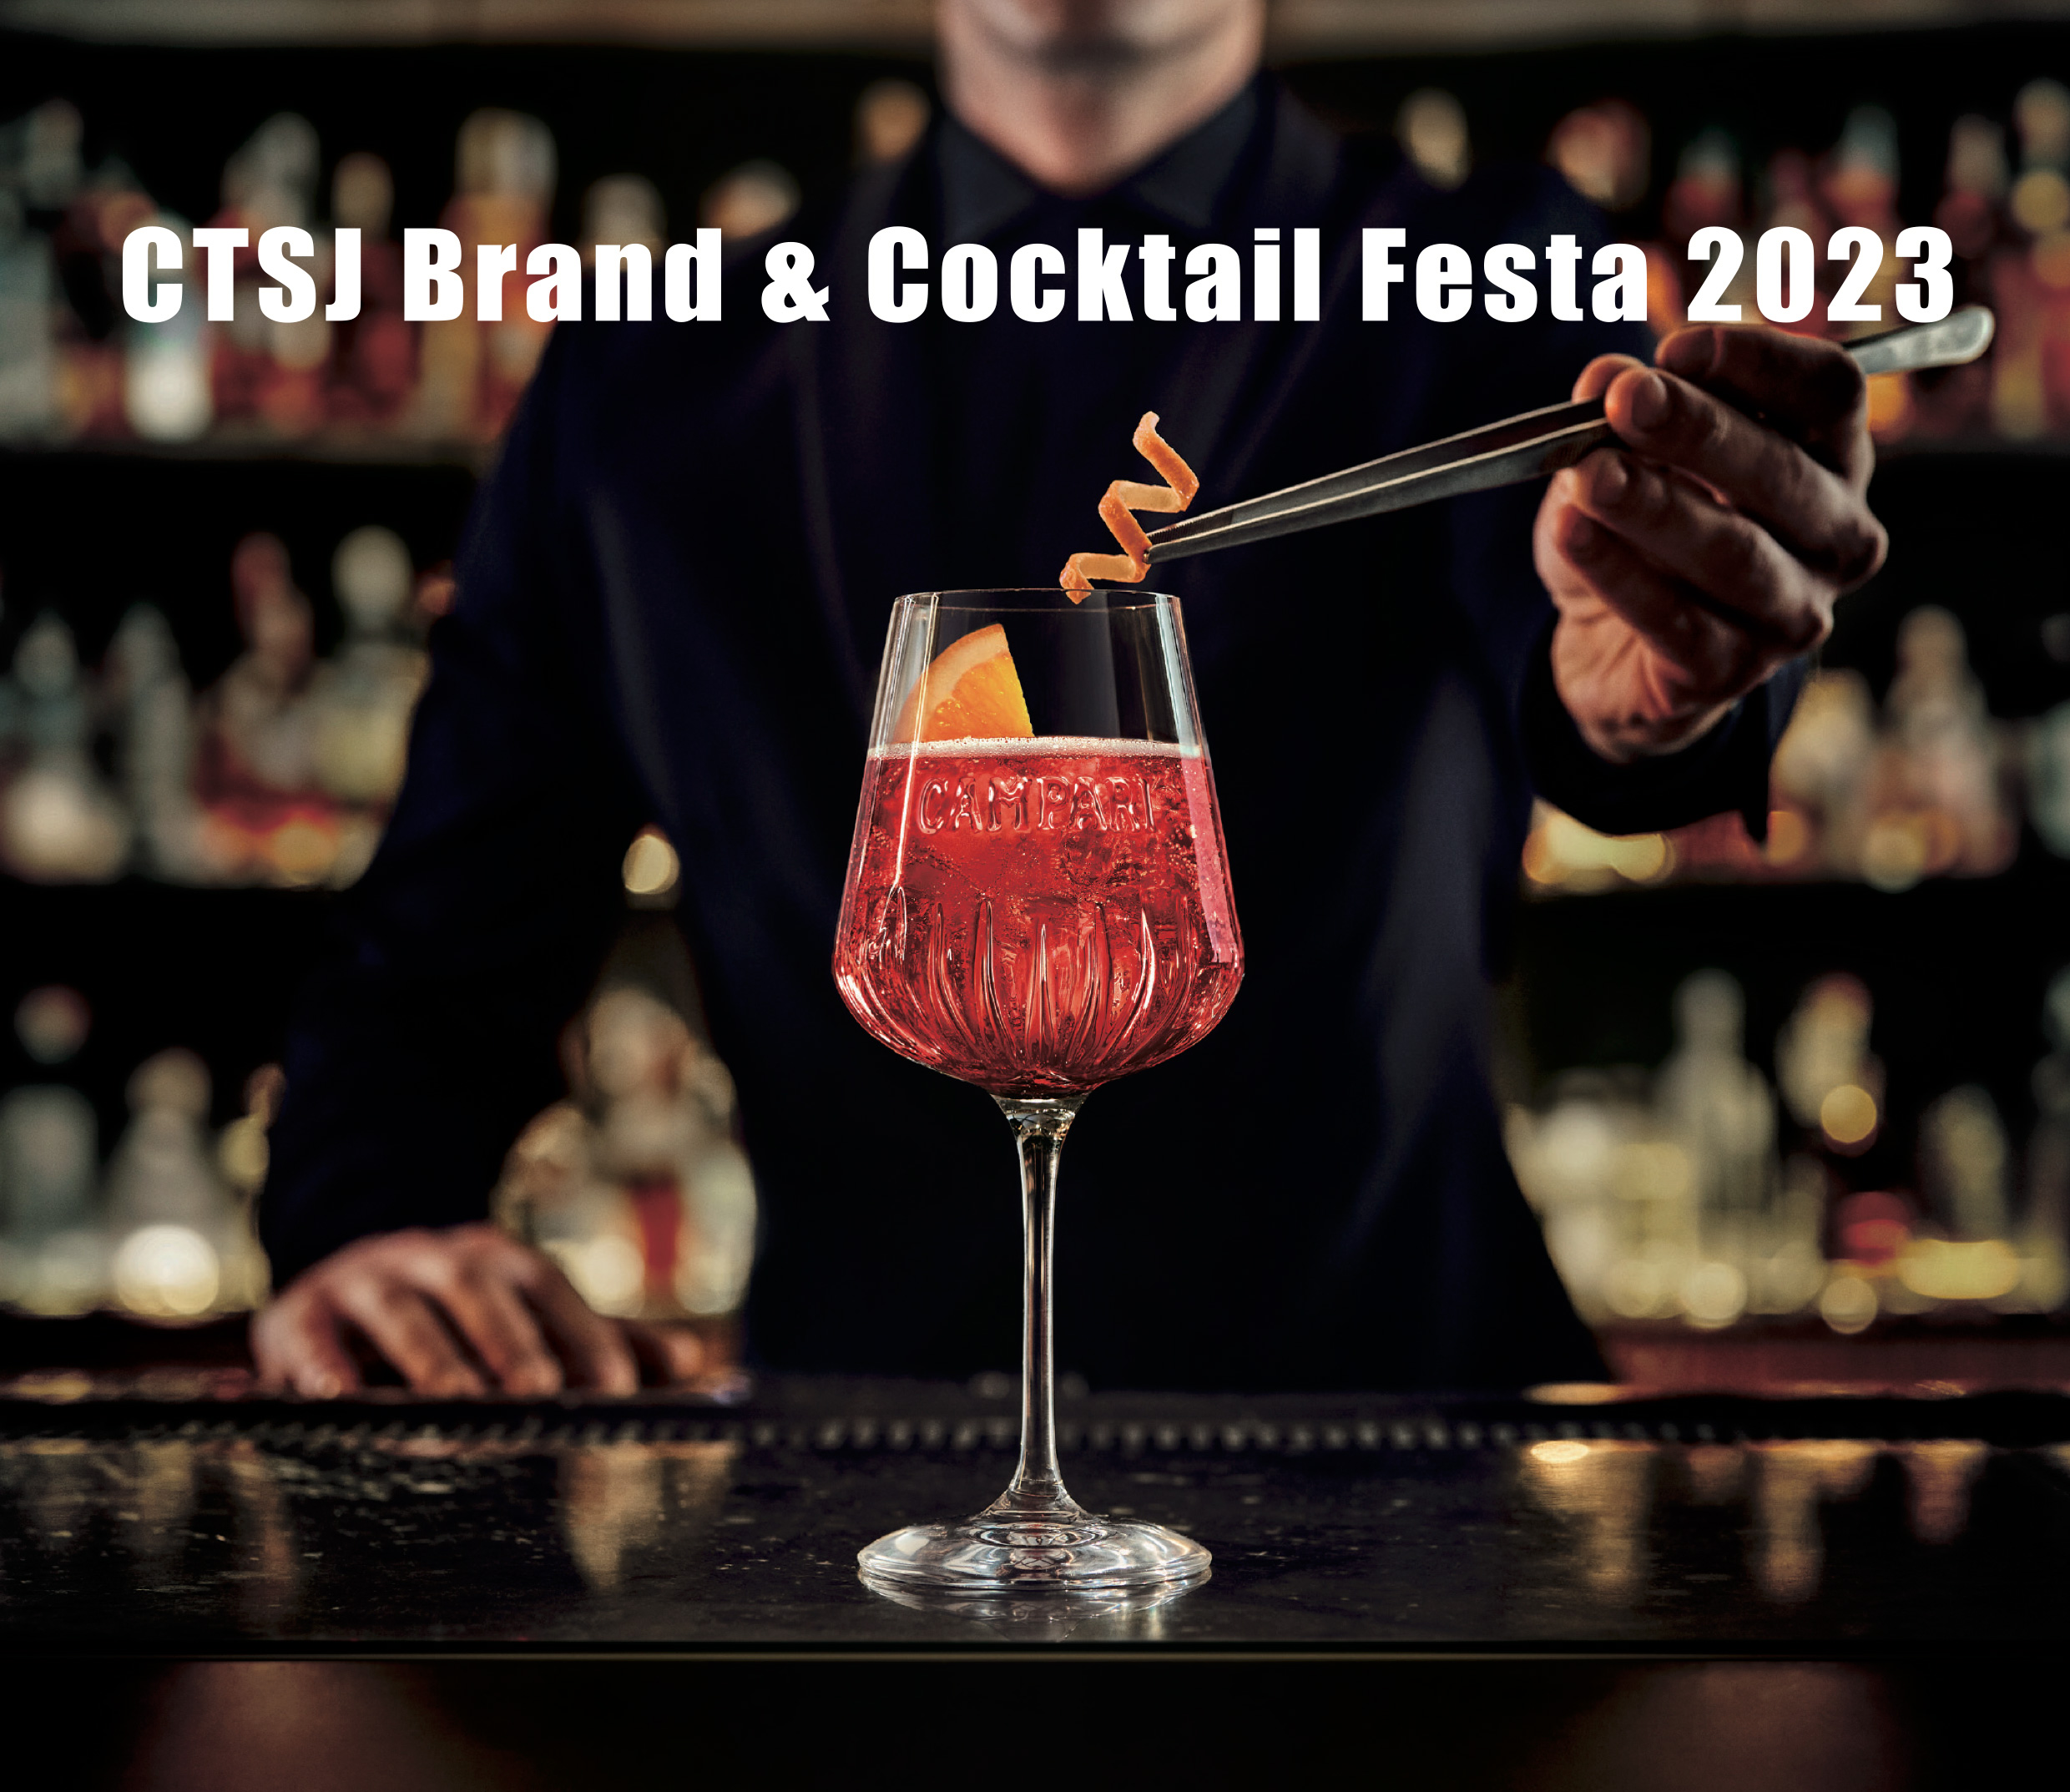 【レポート】CAMPARI GROUPの日本市場ポートフォリオを満喫できるイベント「CTSJ Brand ＆Cocktail Festa 2023」